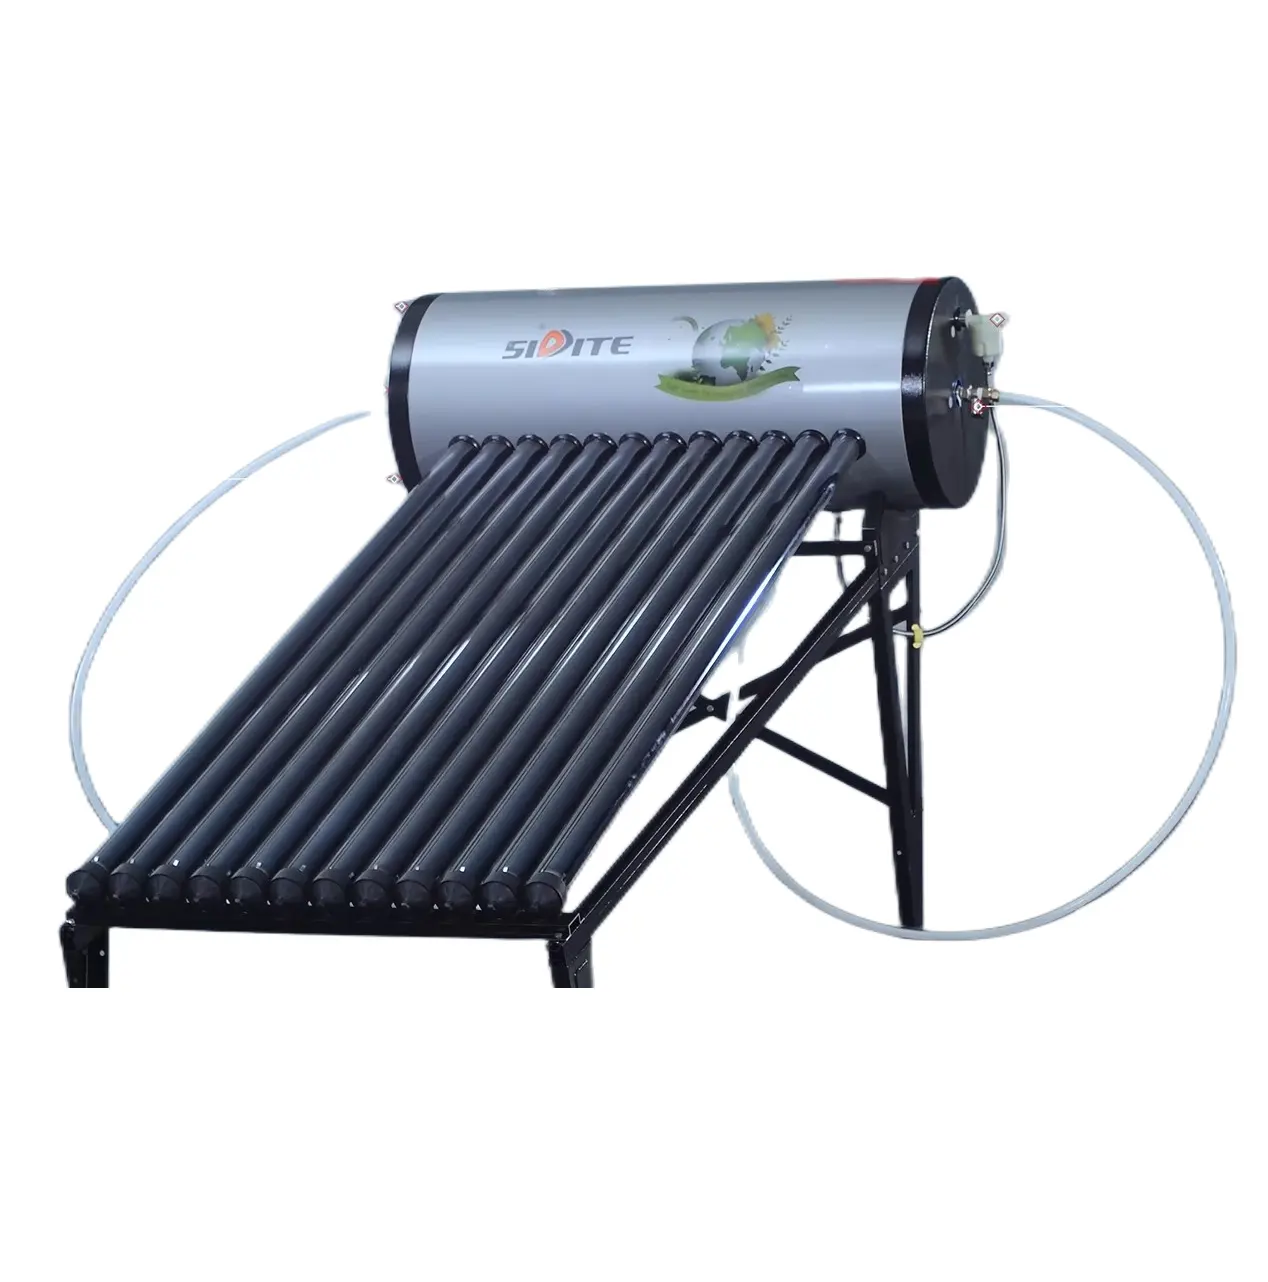 حار بيع مدفأة تعمل بالطاقة الشمسية المياه 200L مزدوجة المياه خزان سخانات الشمسية